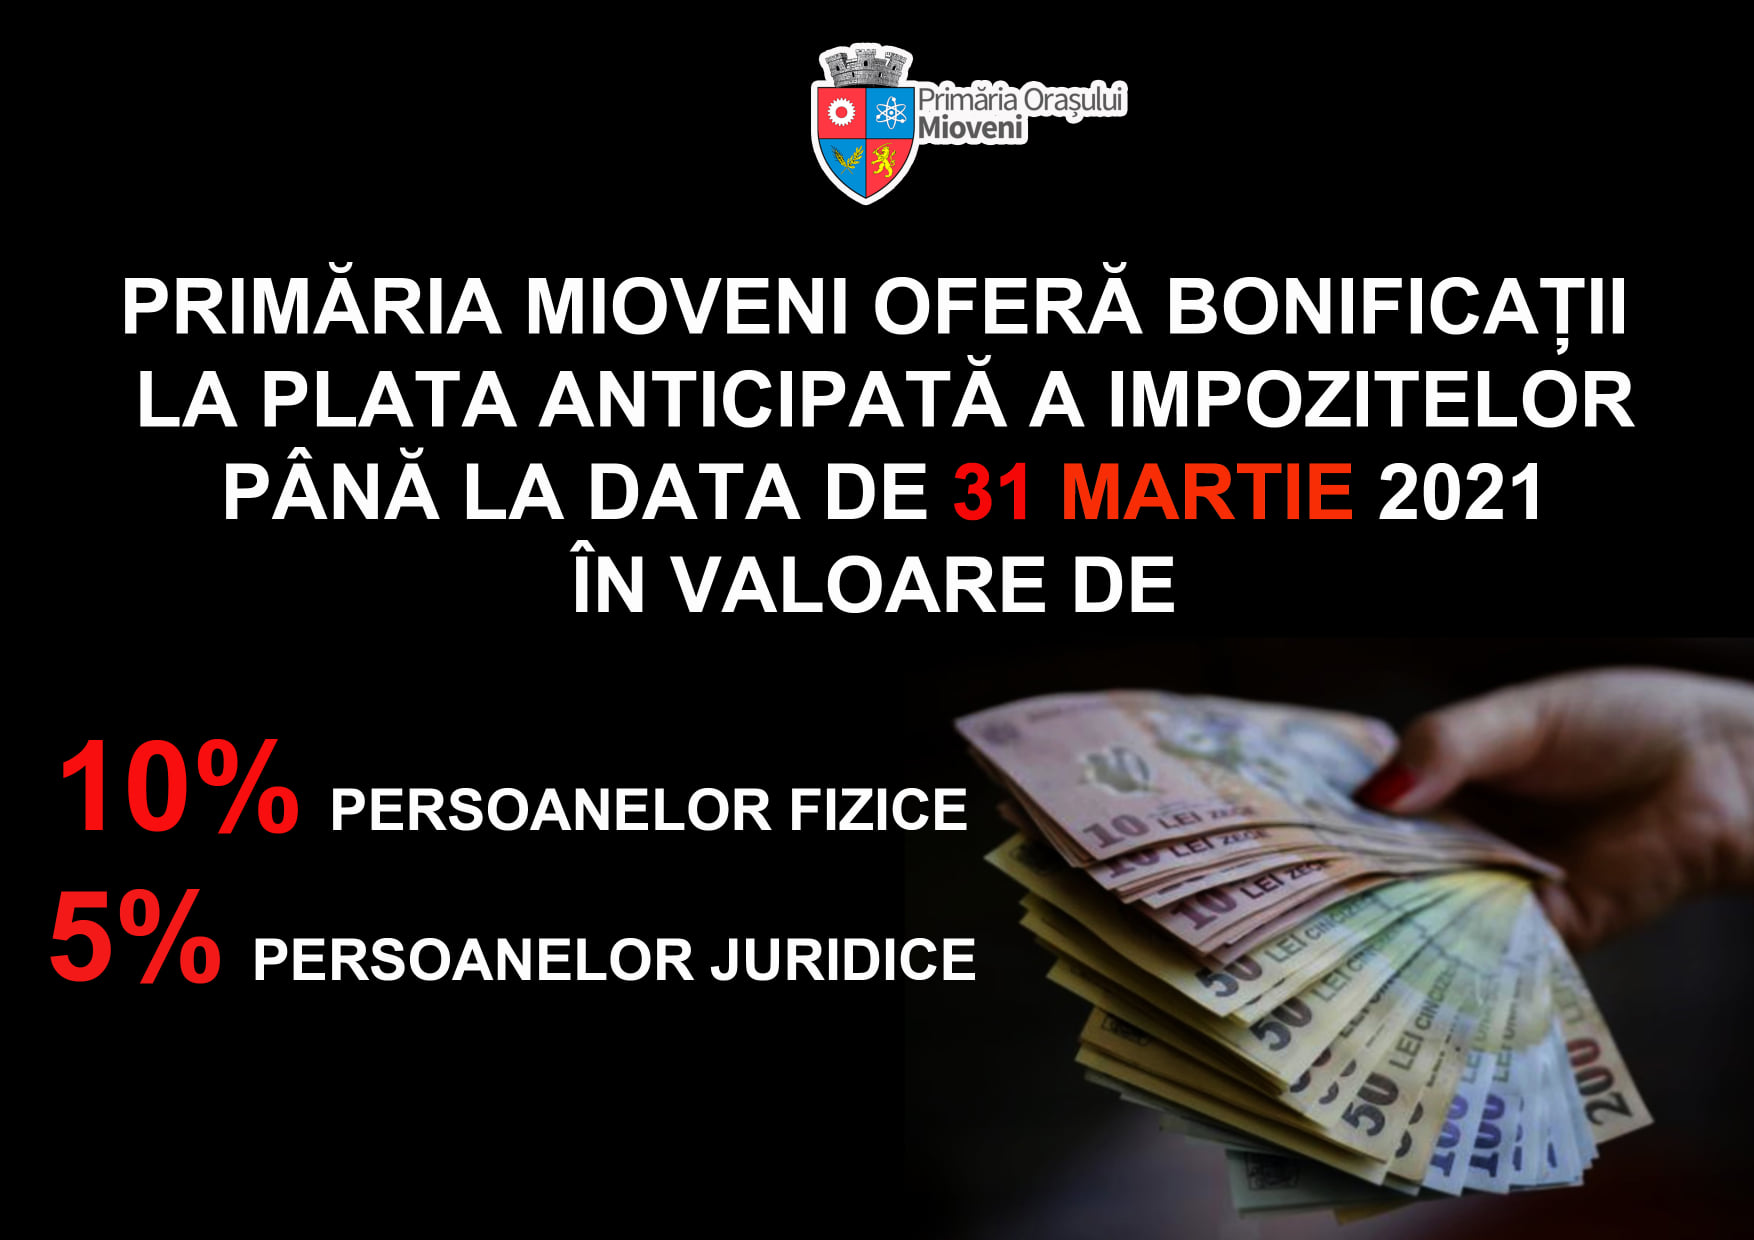 31 MARTIE – TERMEN LIMITĂ PENTRU PLATA IMPOZITELOR CU BONIFICAȚIA DE 10%! 